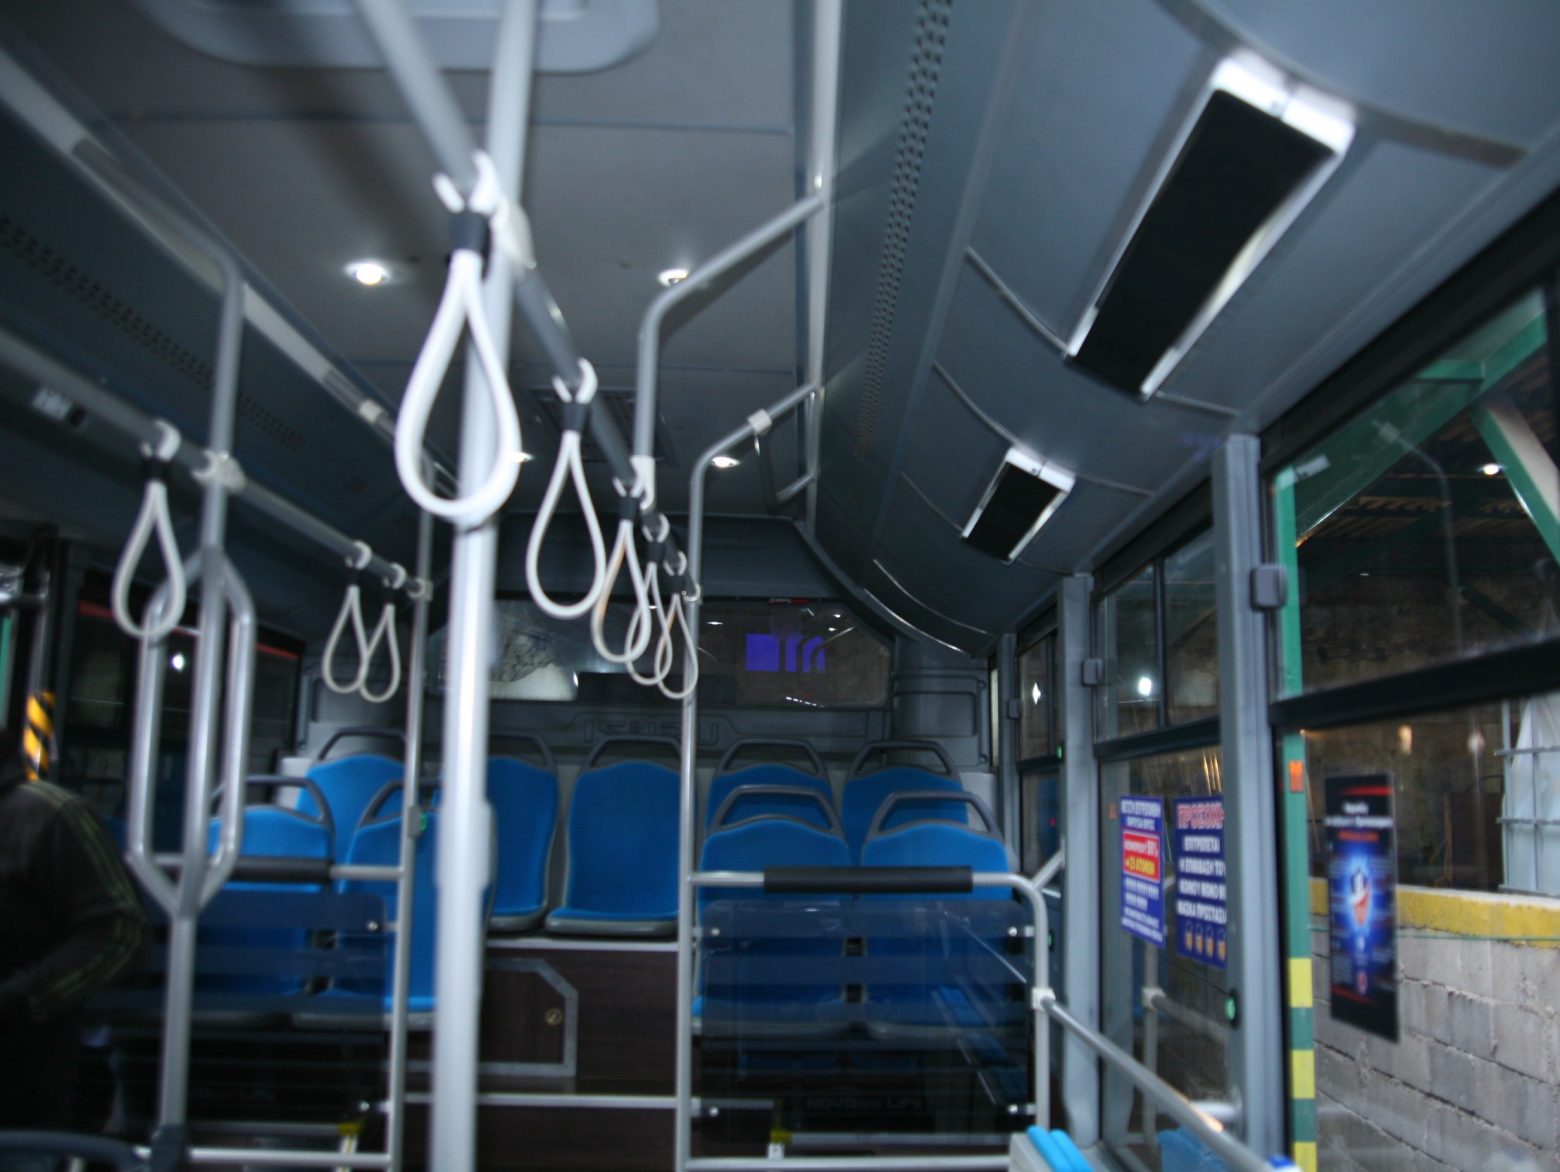 Δήμος Πειραιά - Νέες συσκευές απολύμανσης του αέρα στα δημοτικά λεωφορεία